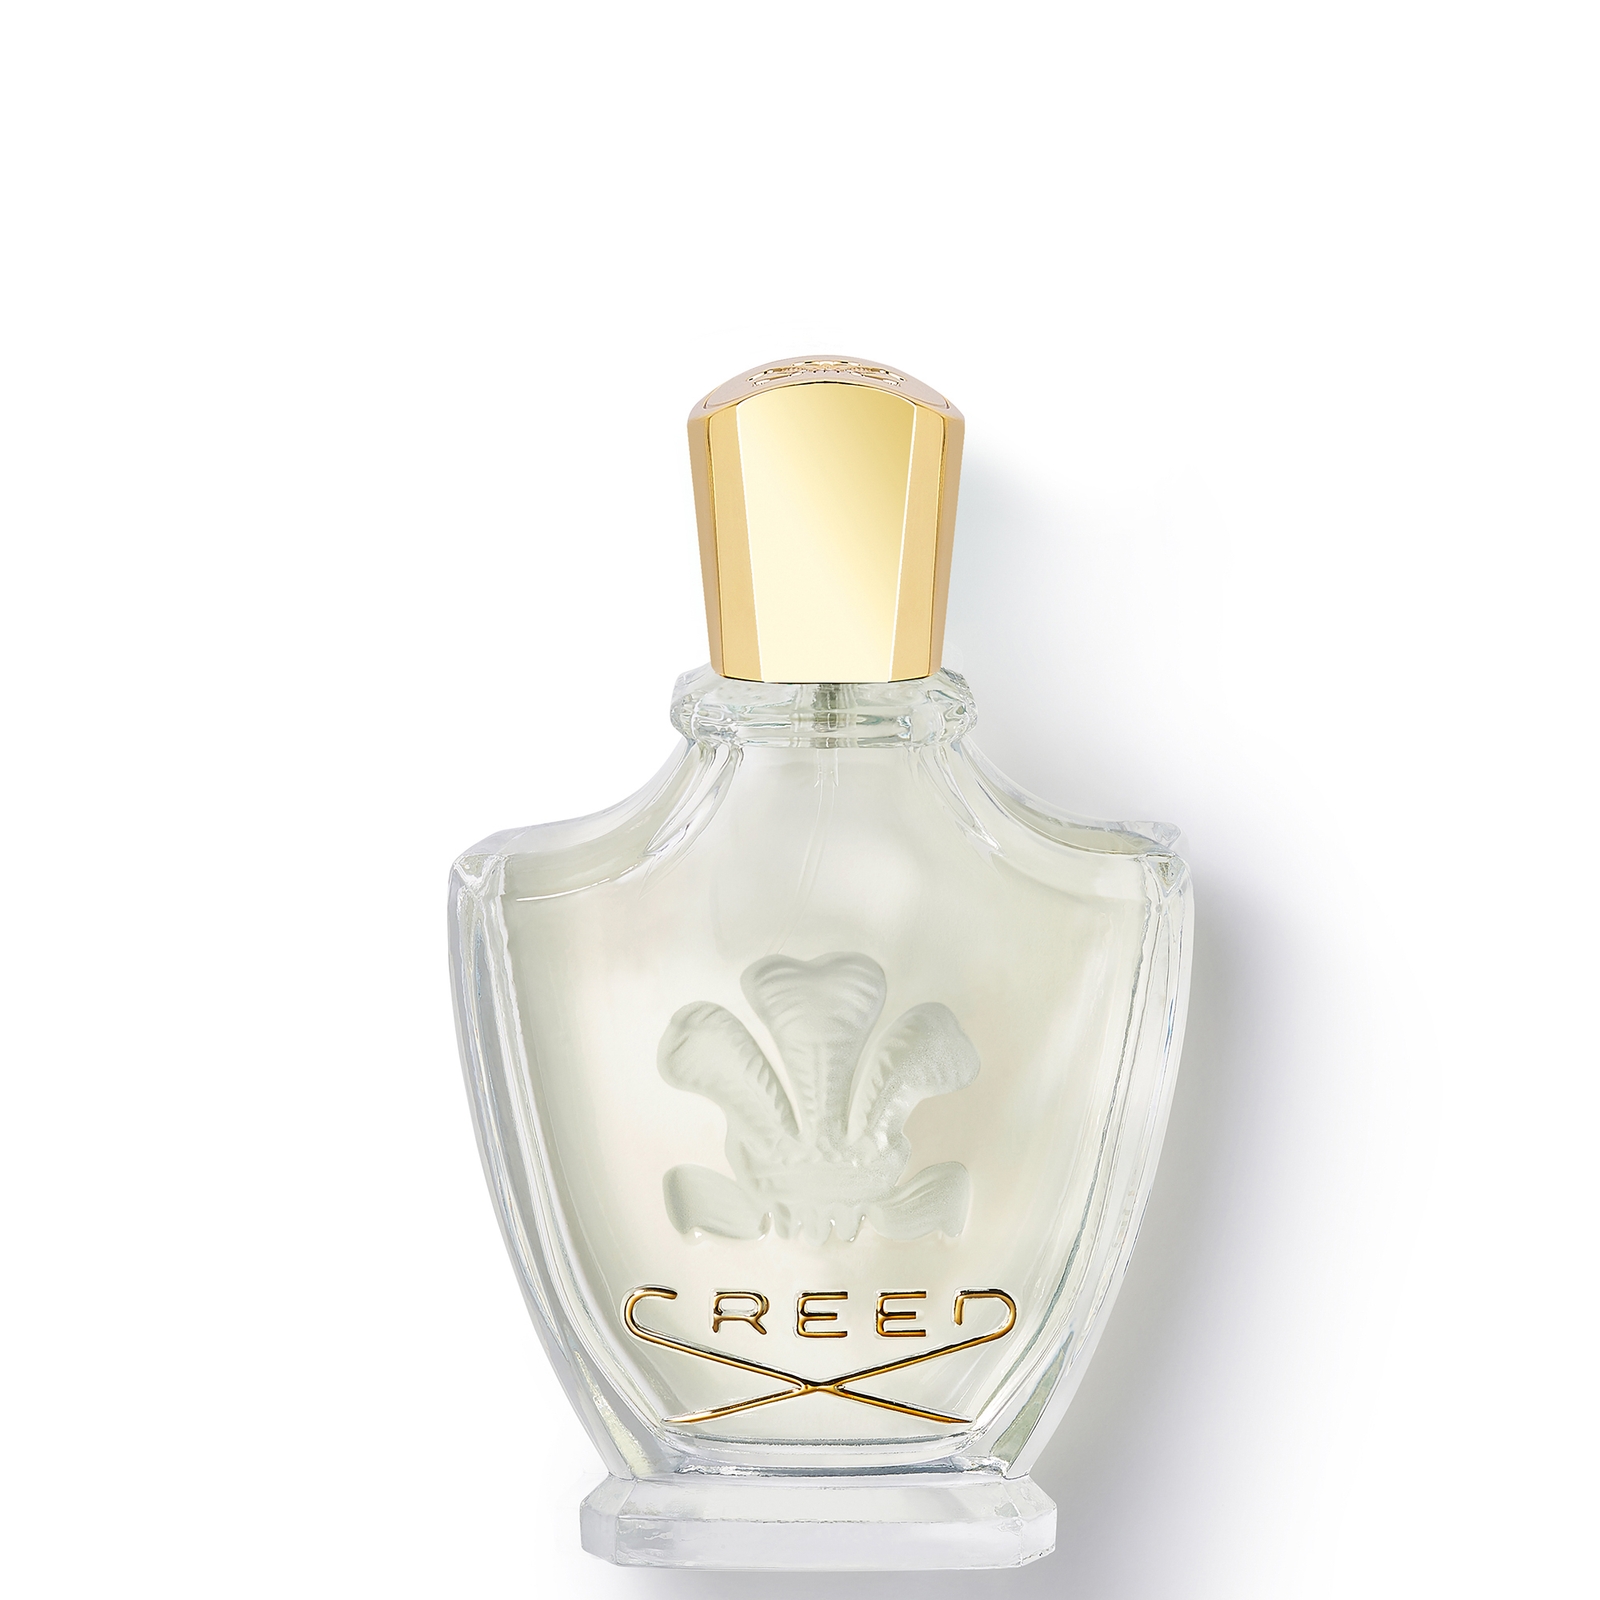 Photos - Women's Fragrance Creed Fleurissimo Eau de Parfum - 75ml 